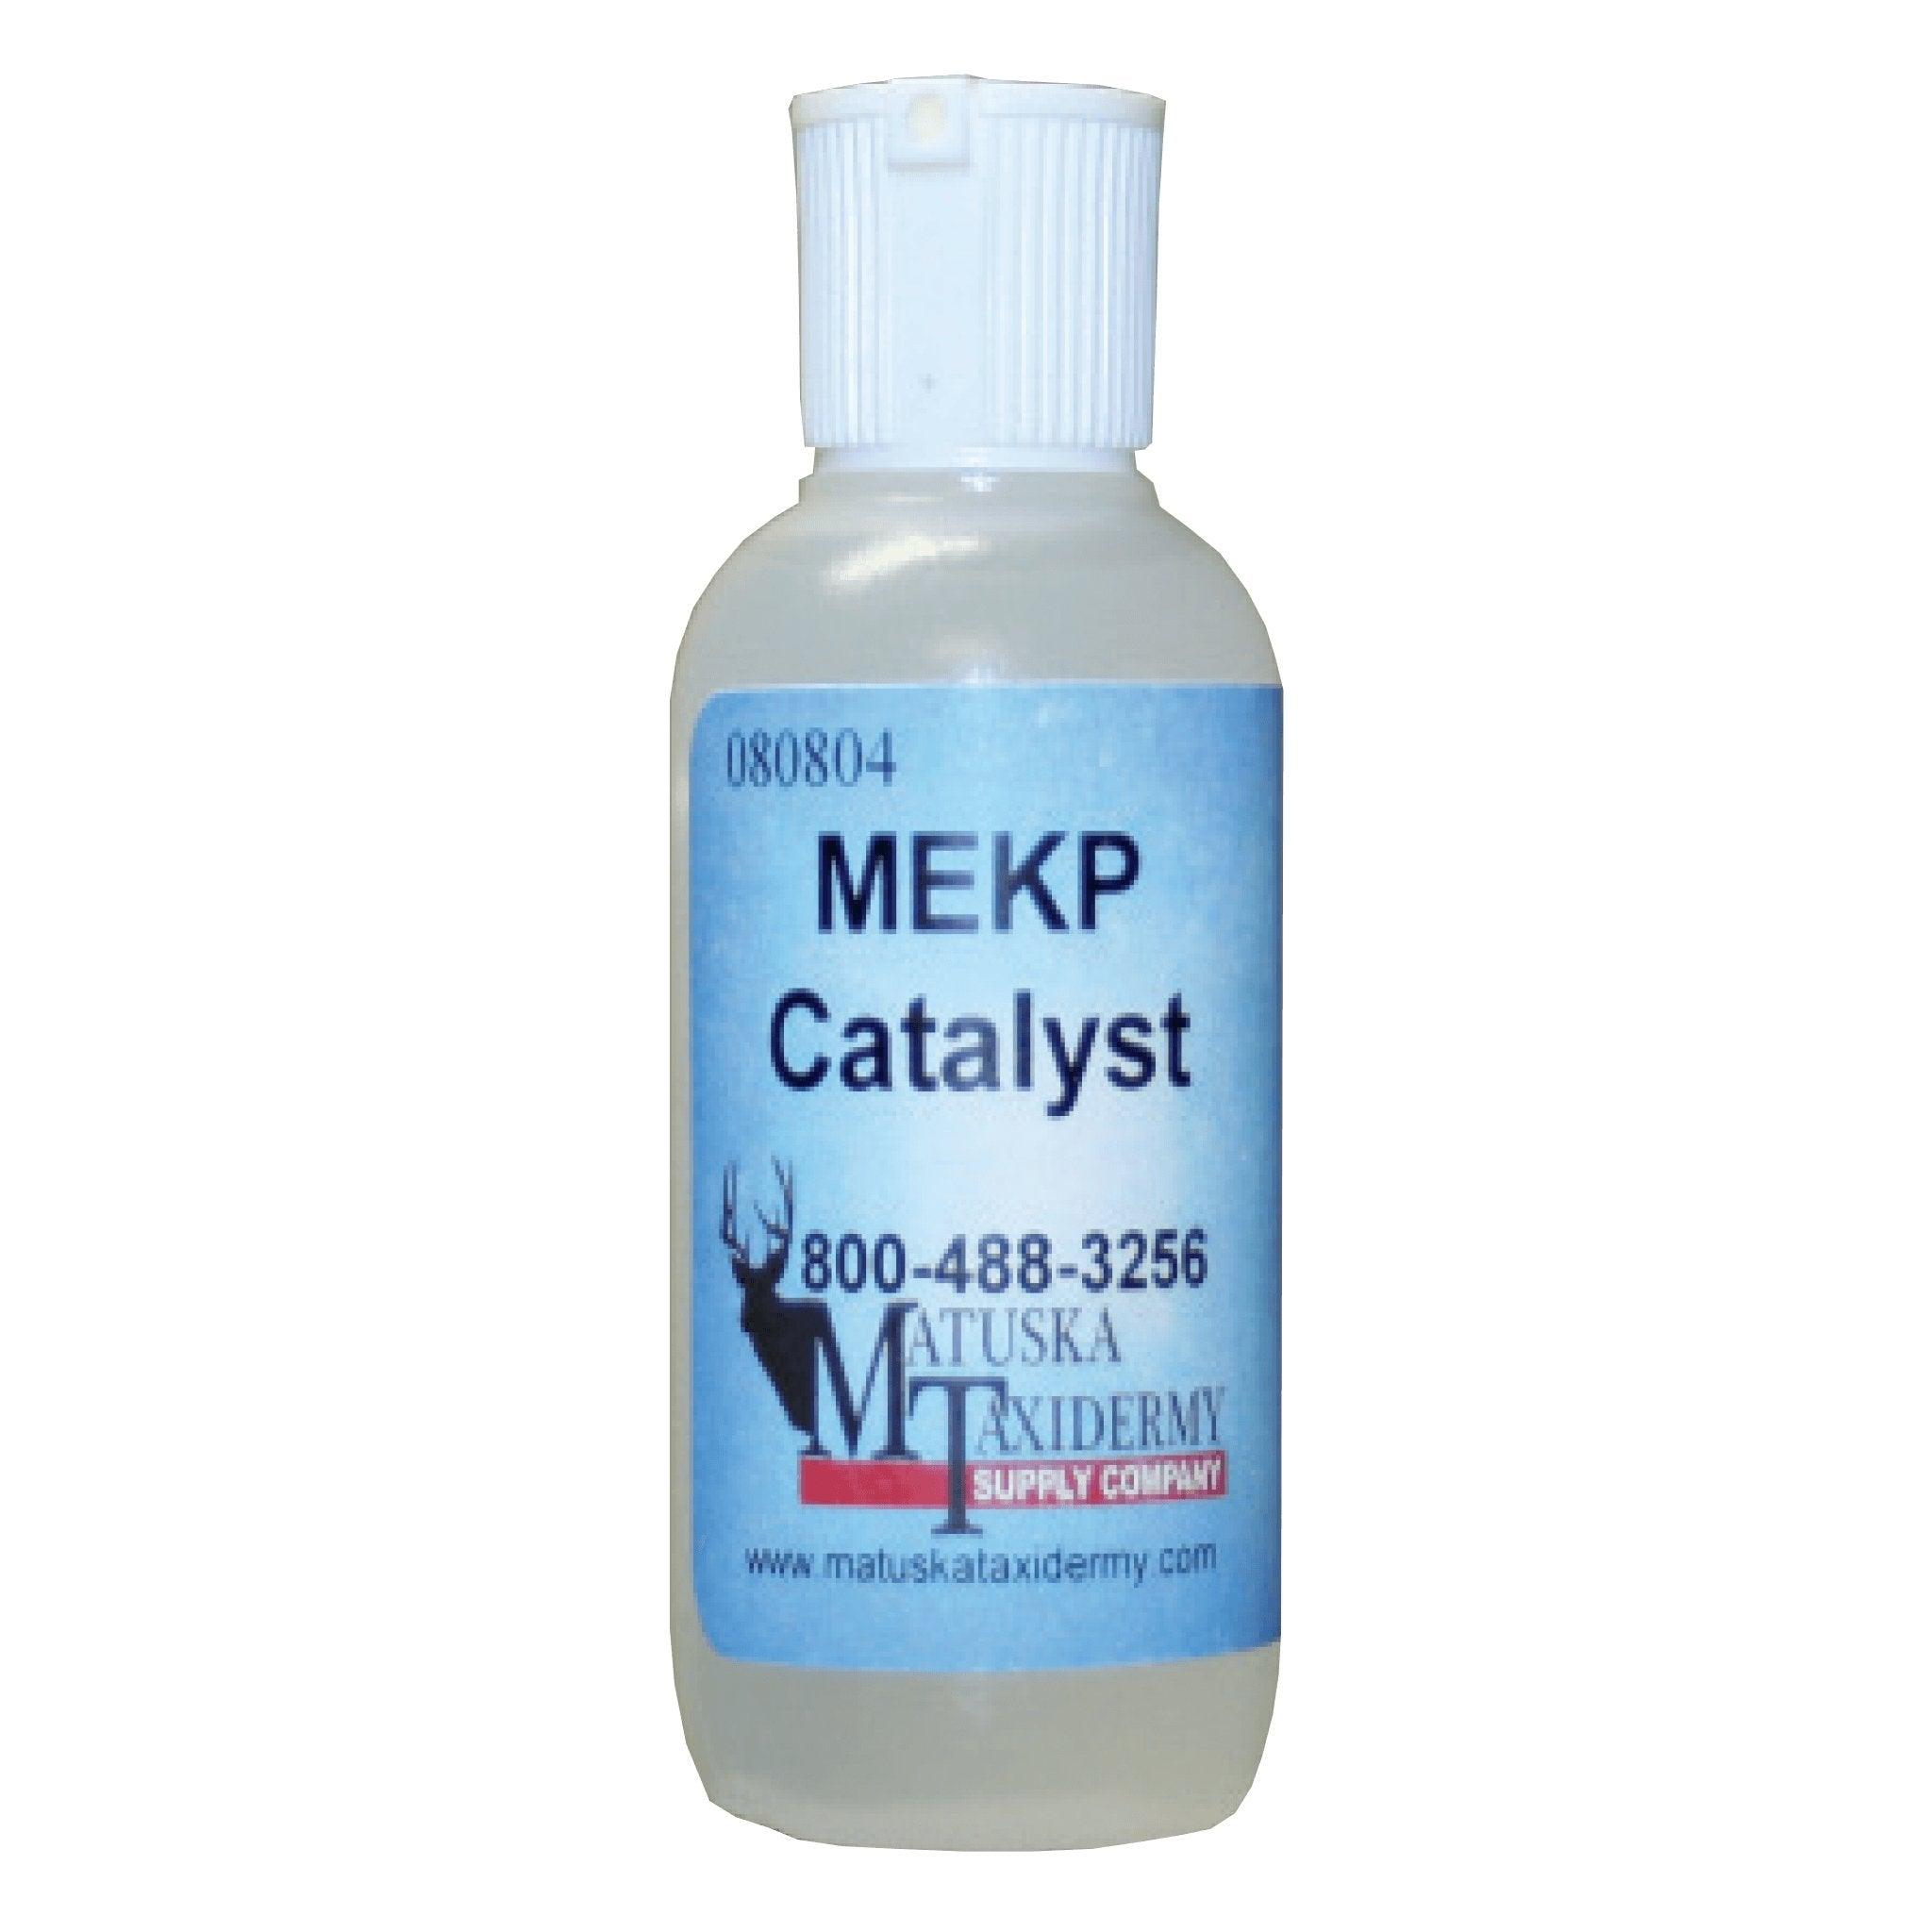 MEKP Catalyst - Matuska Taxidermy Supply Company